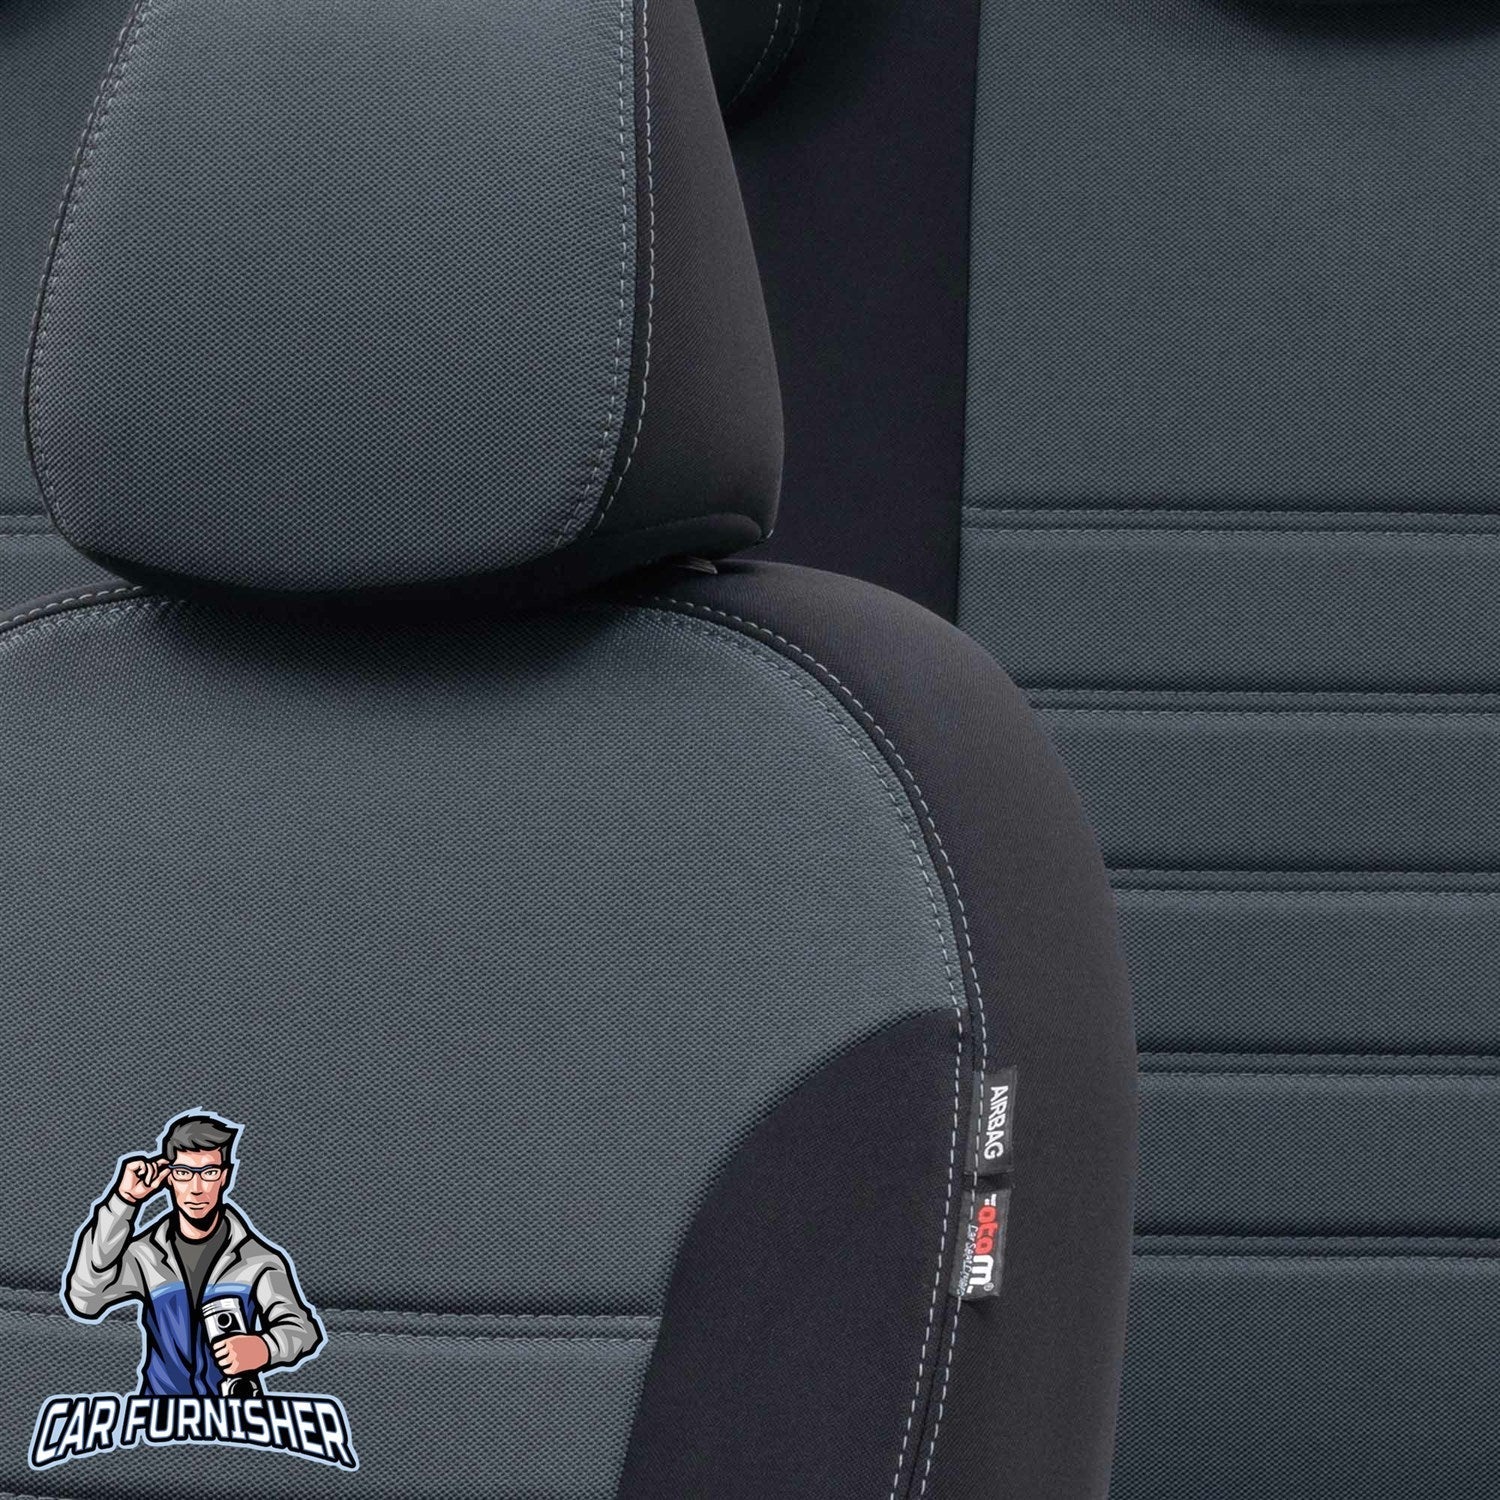 Kia Venga Seat Cover Original Jacquard Design Smoked Black Jacquard Fabric